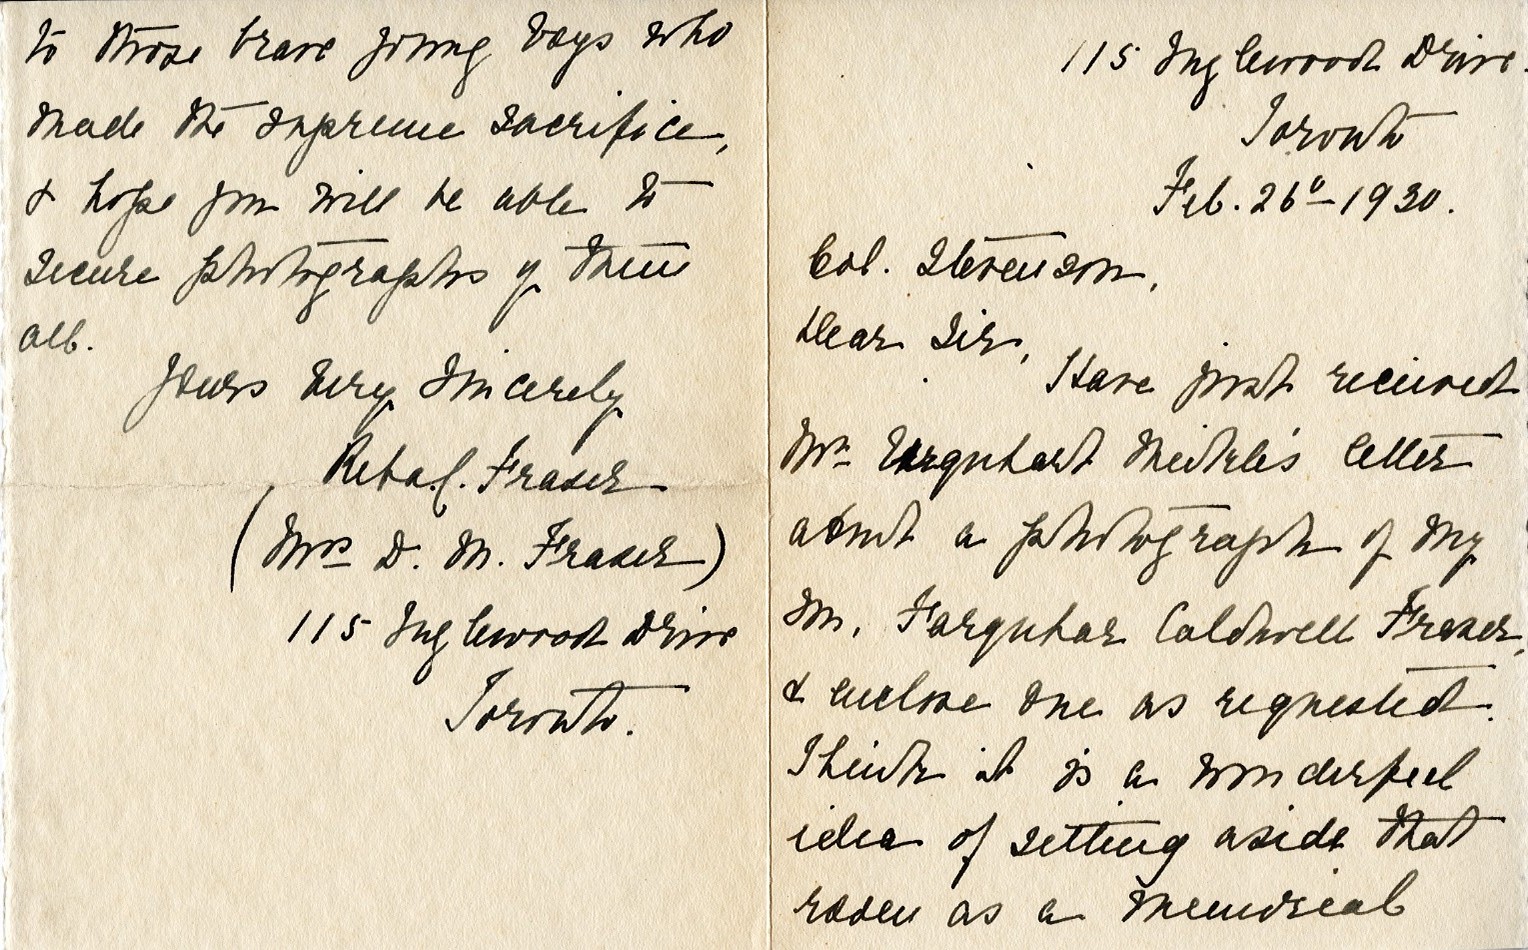 Letter from Mrs. D.M. Fraser to Lt. Col. K.L. Stevenson, 26th February 1930